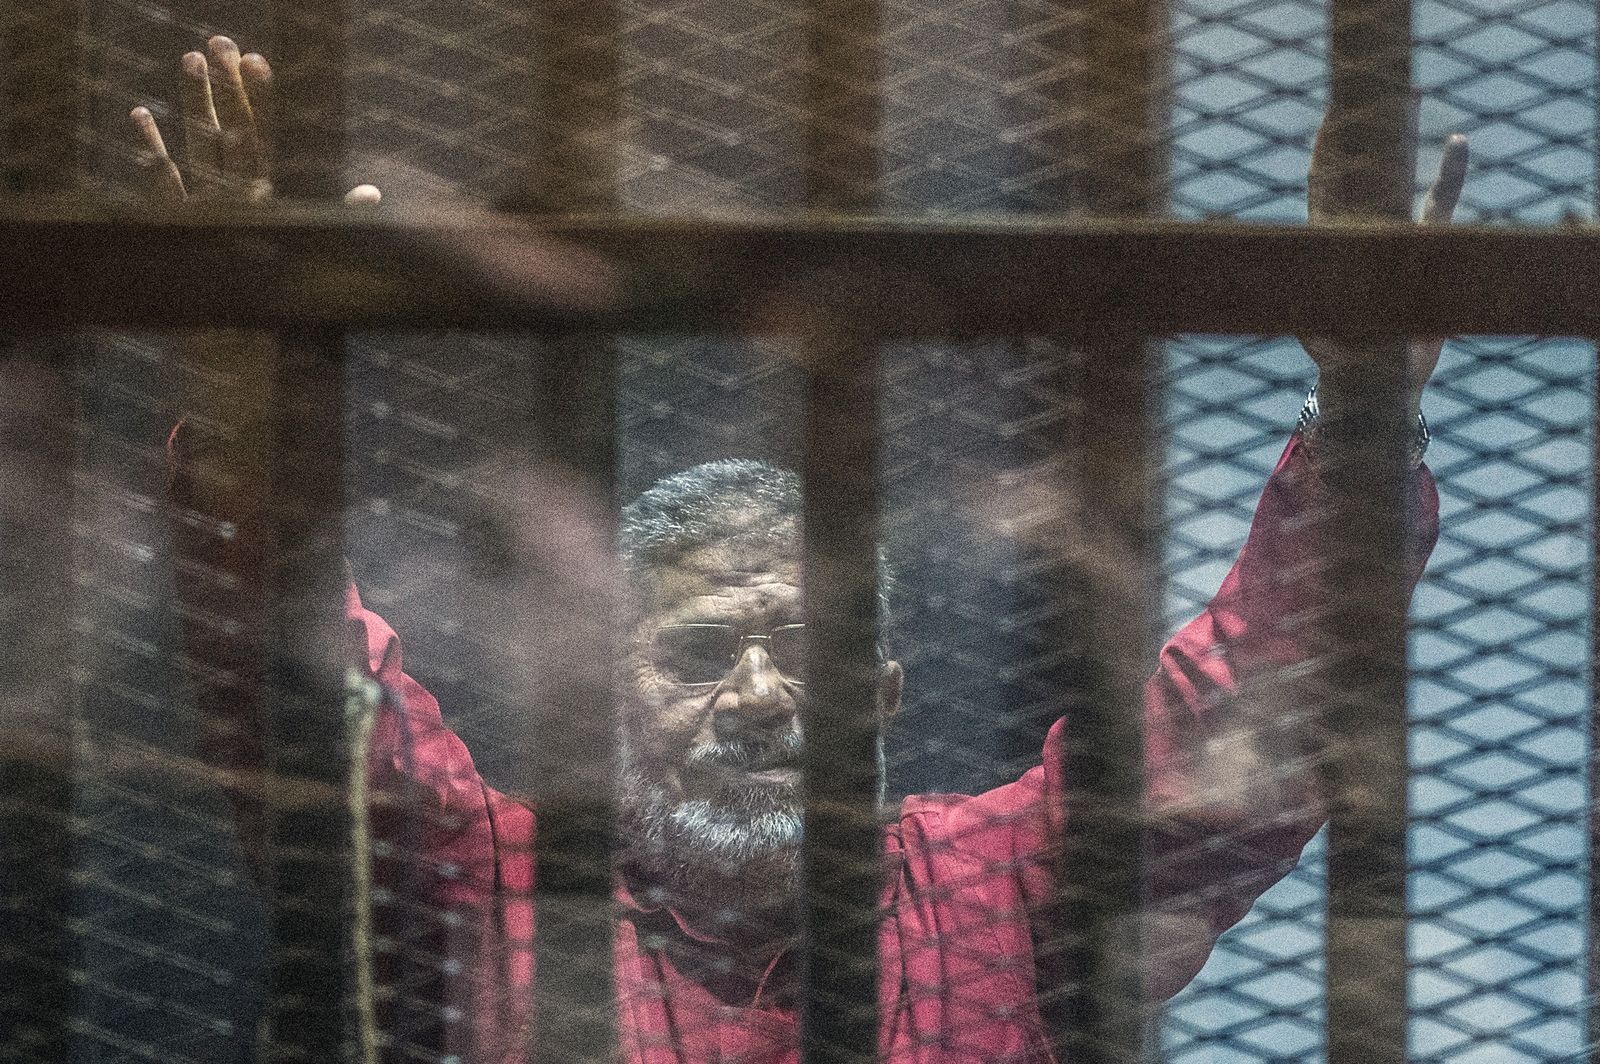 AFP-โมฮัมเหม็ด มอร์ซี อดีตประธานาธิบดีอียิปต์ที่ถูกรัฐประหารเมื่อปี 2556 เสียชีวิตเมื่อ 17 มิ.ย.2562